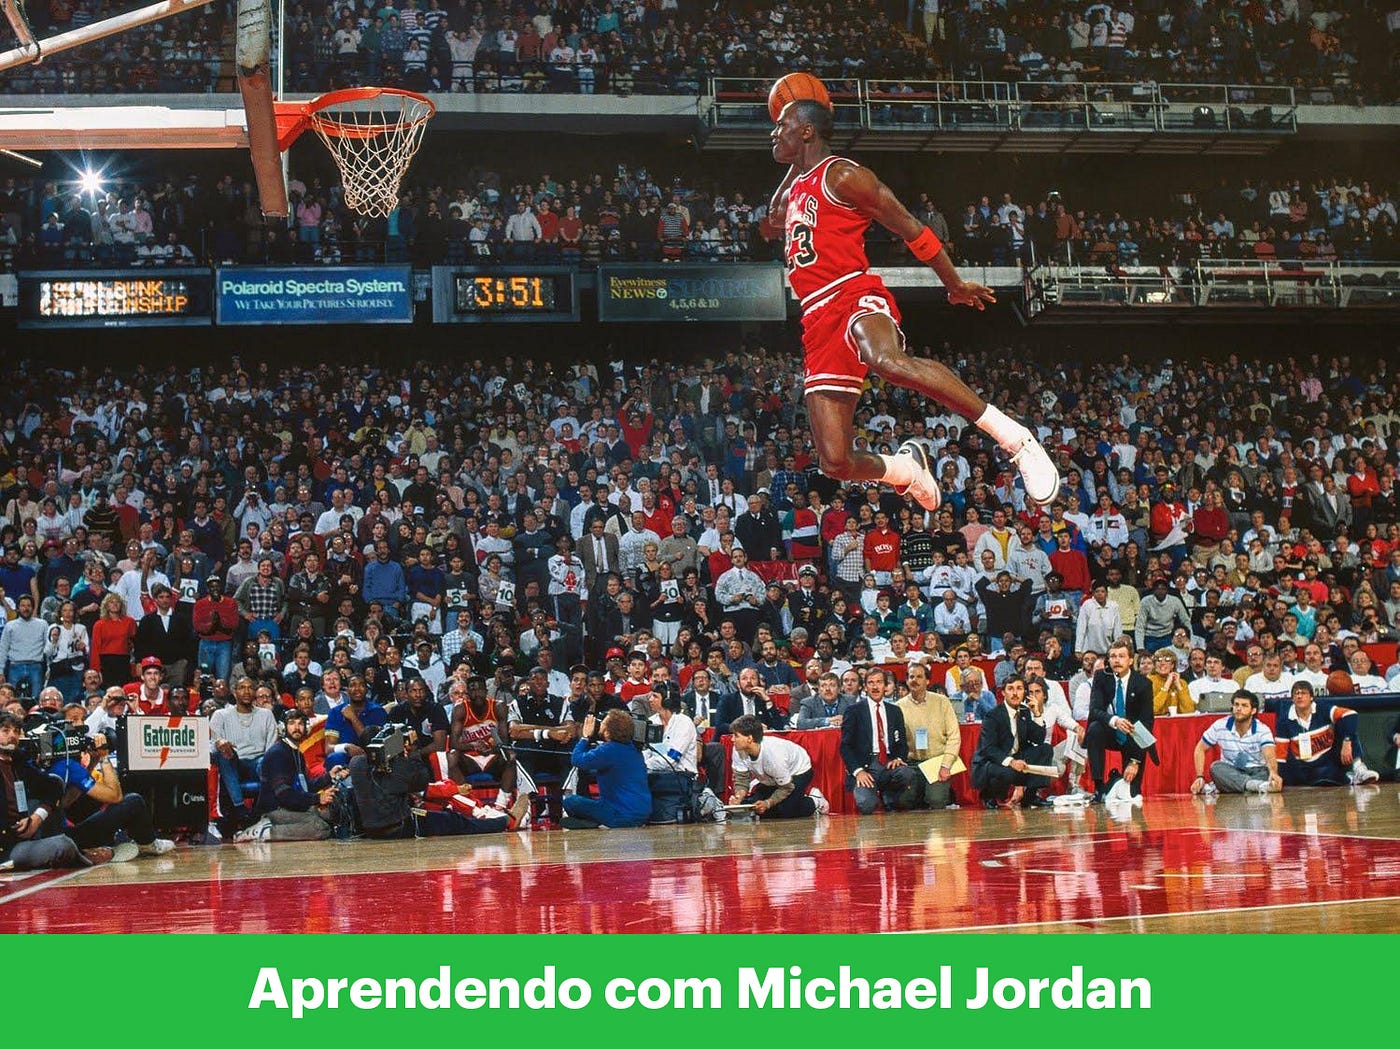 O que sua empresa pode aprender com o Michael Jordan? | by Igor Saraiva |  Nugo Design | Medium